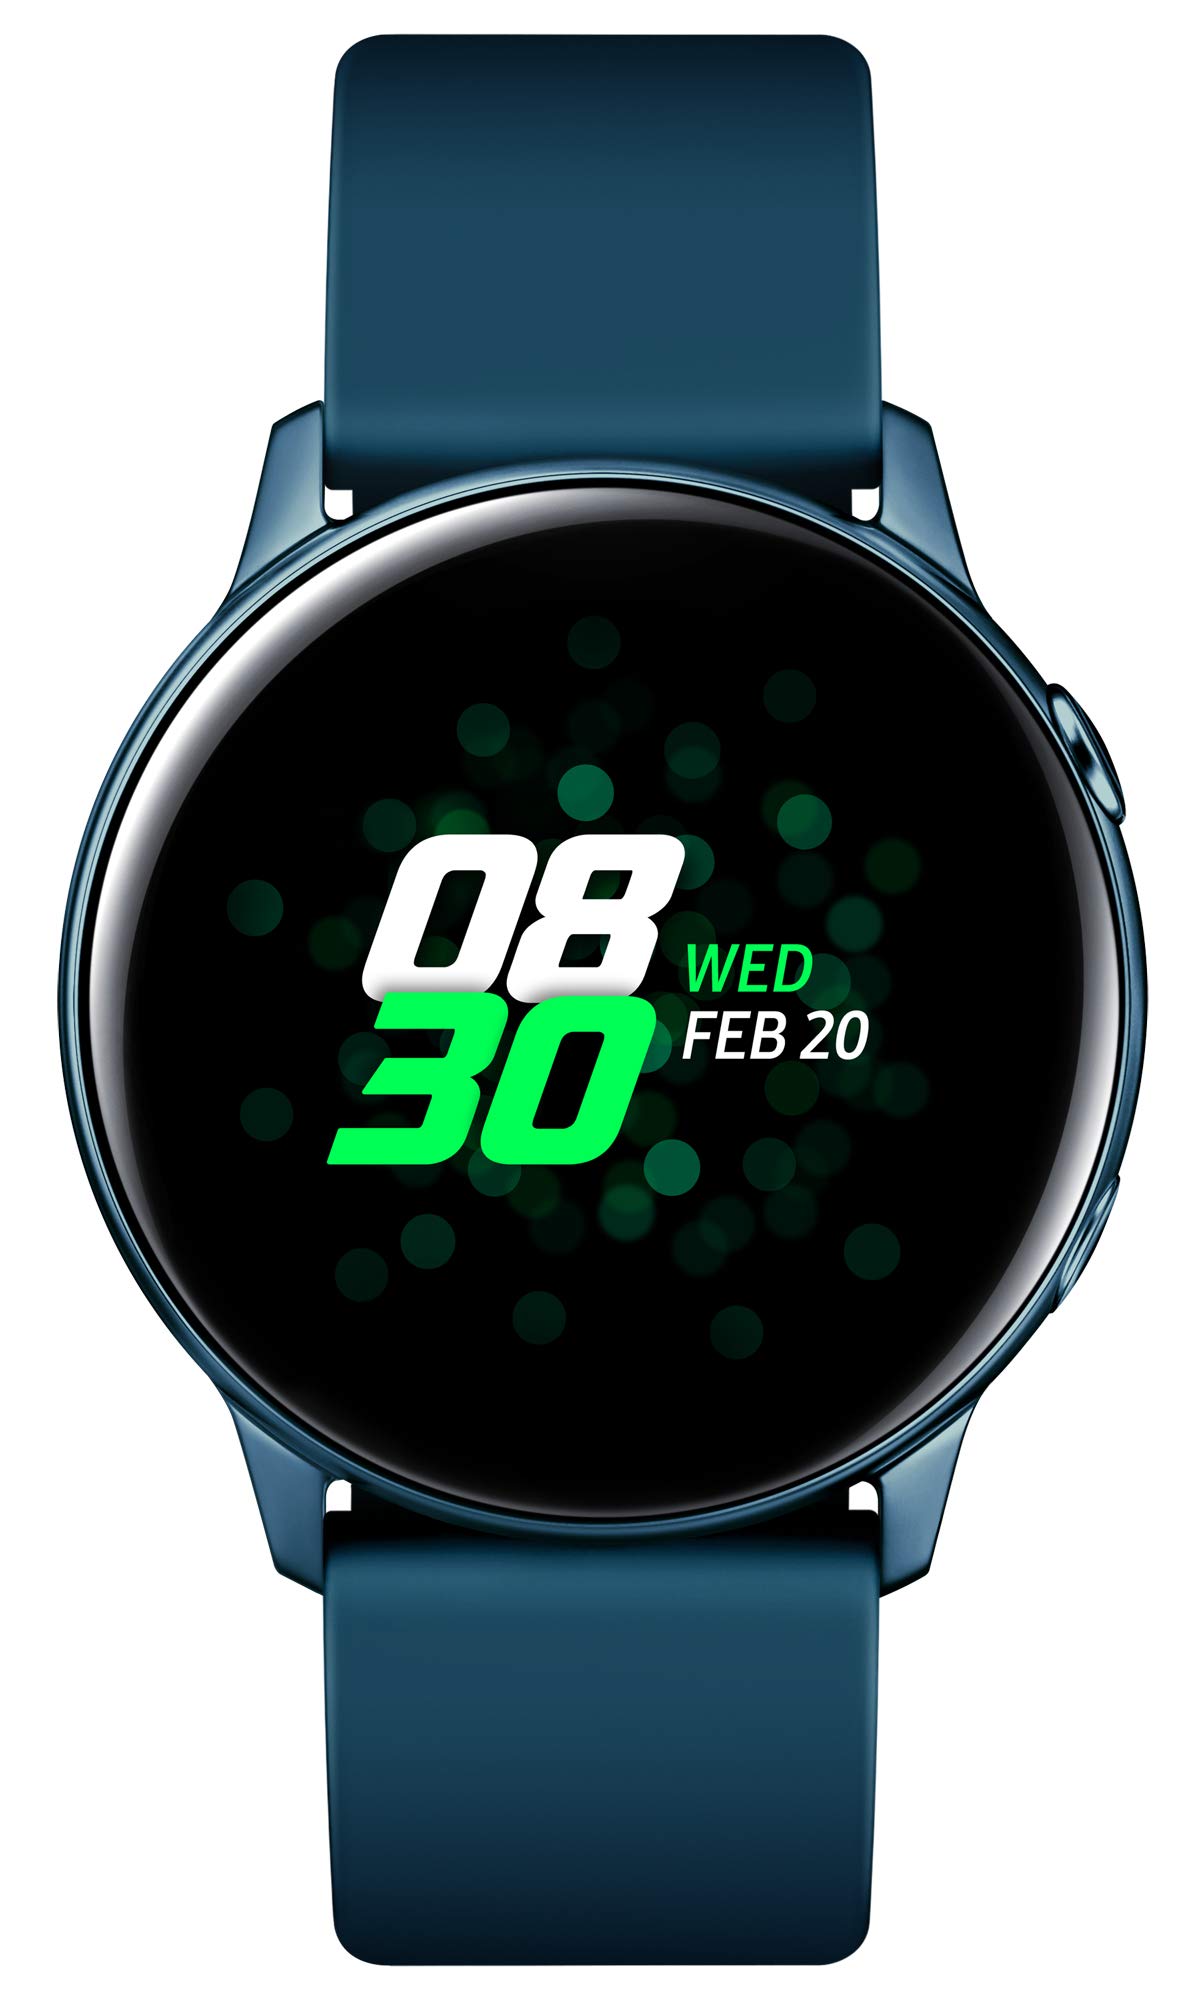 Samsung Galaxy Watch Active, Bluetooth Fitnessarmband Für Android, Fitness-Tracker, 40 mm,wassergeschützt , Grün (Deutche Version)